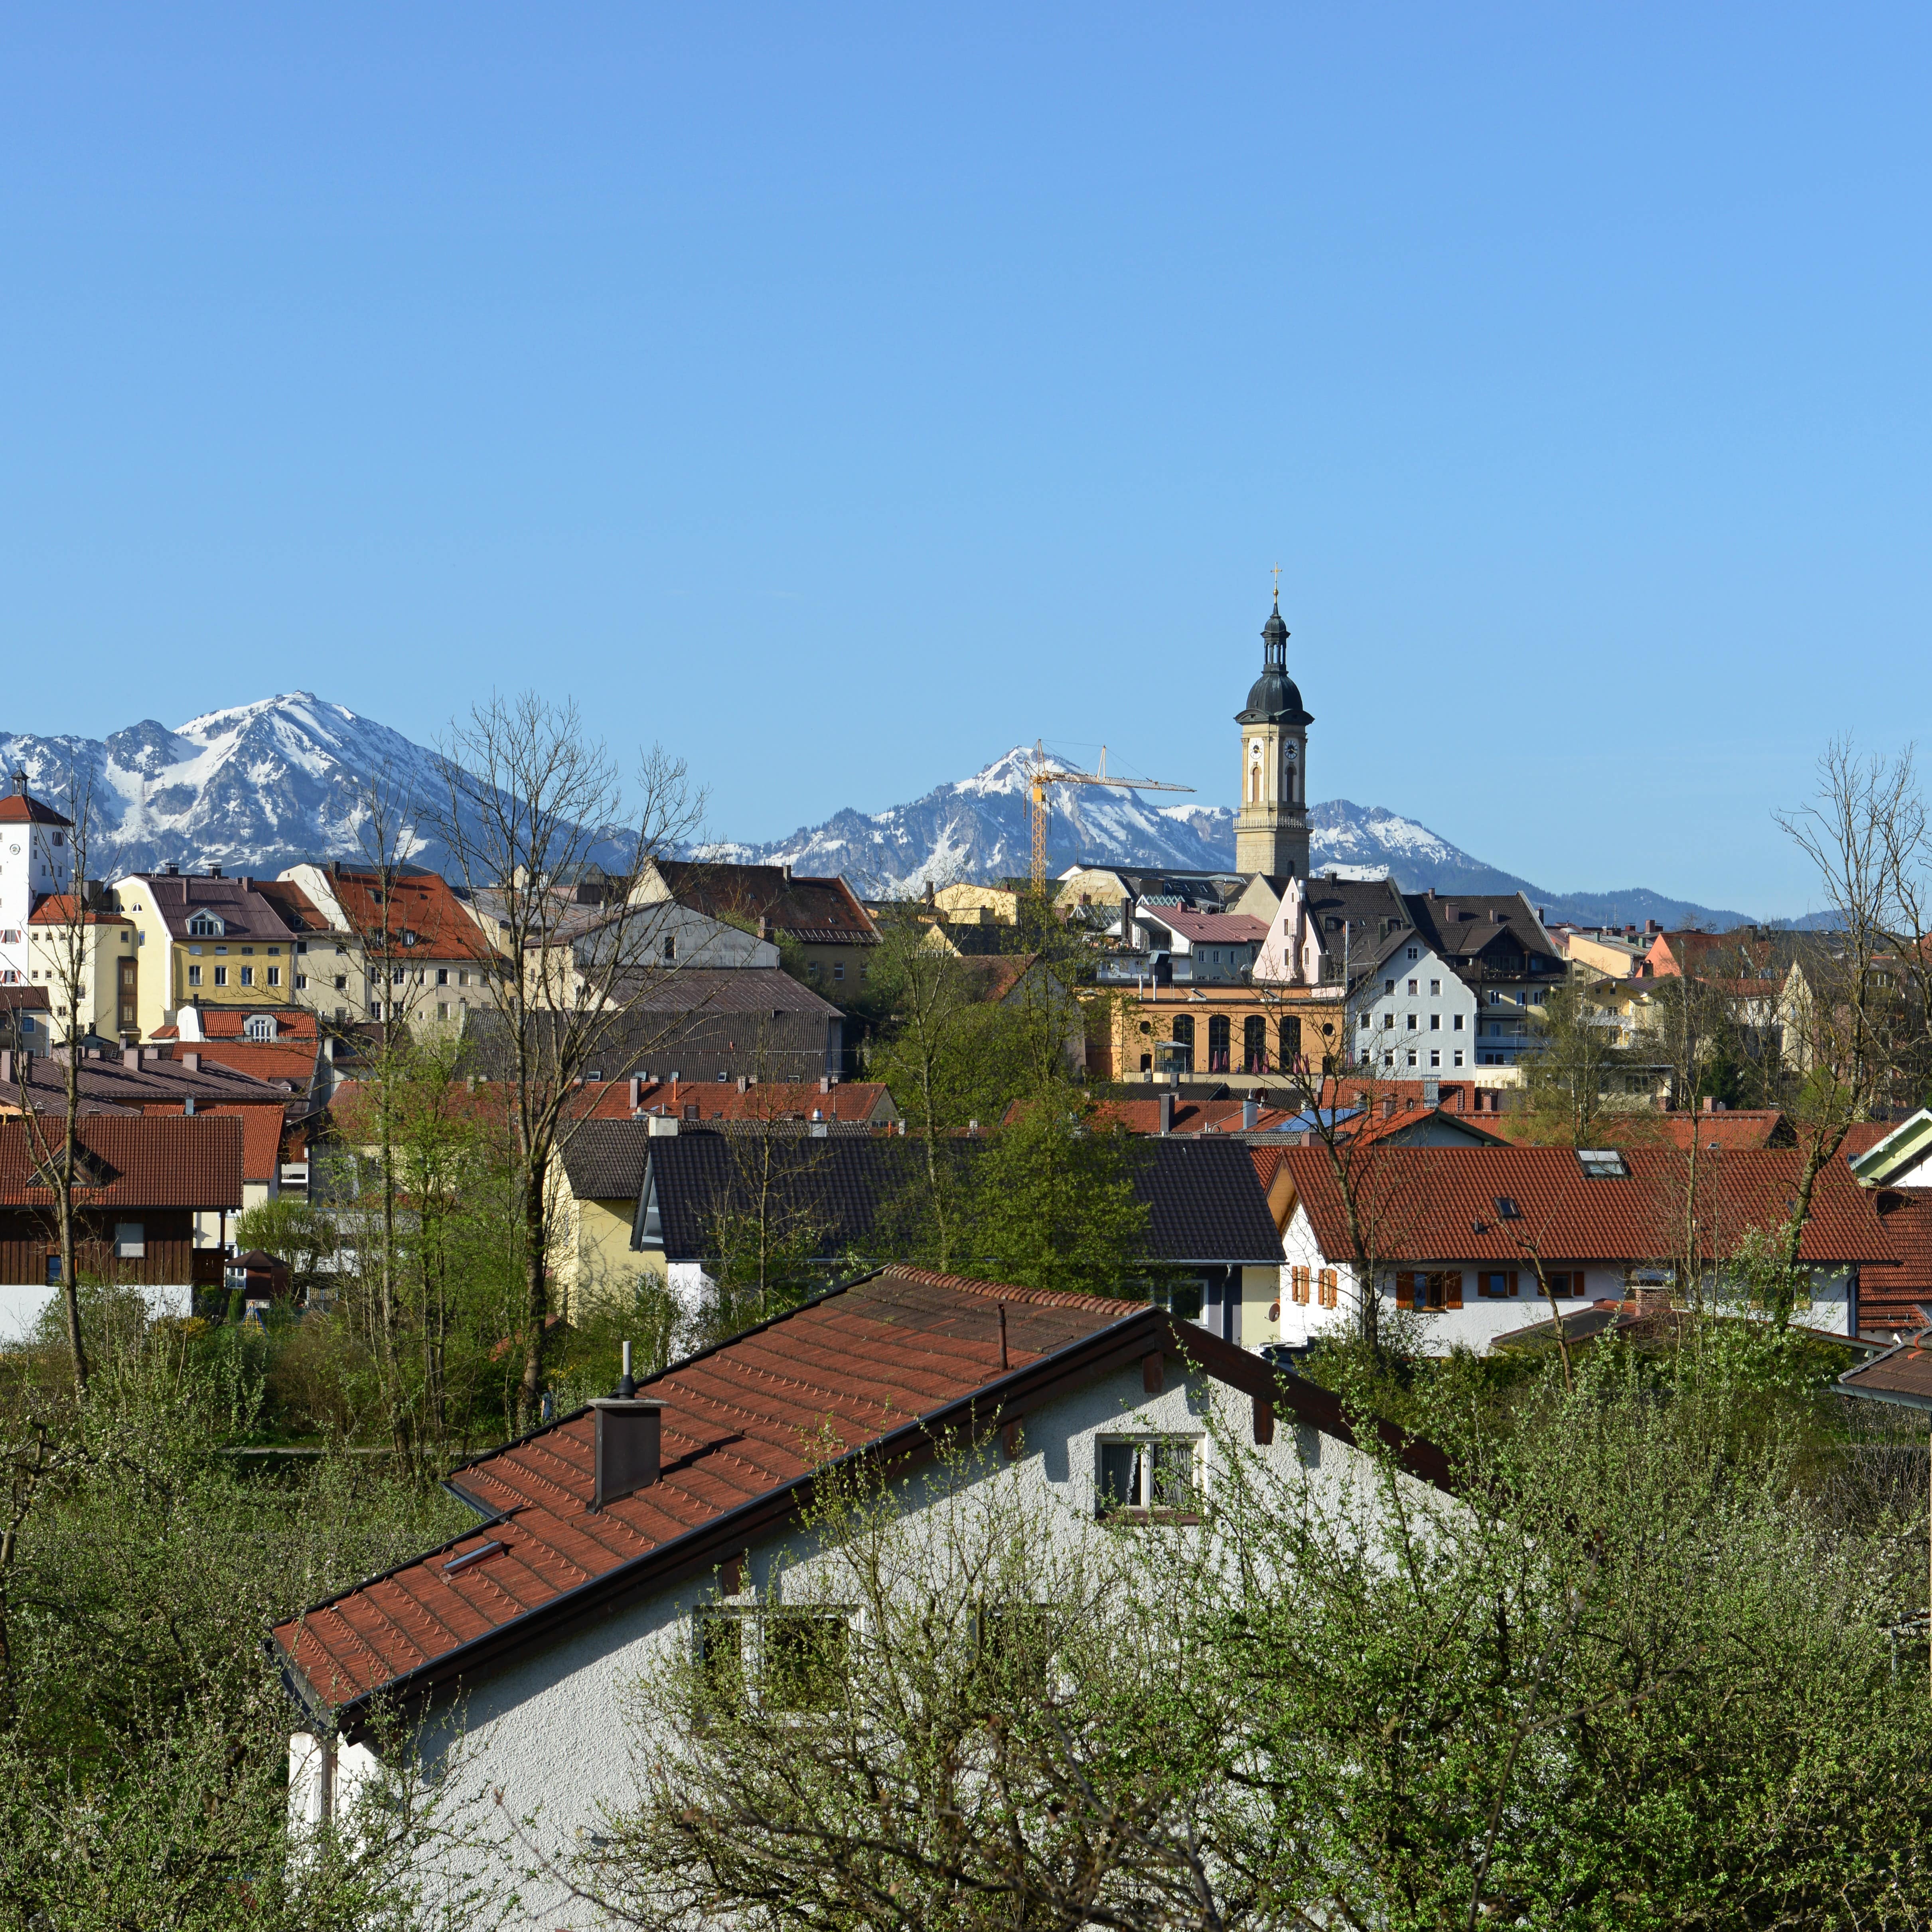 Blick über die Häuser in Traunstein, im Hintergrund die Alpen.